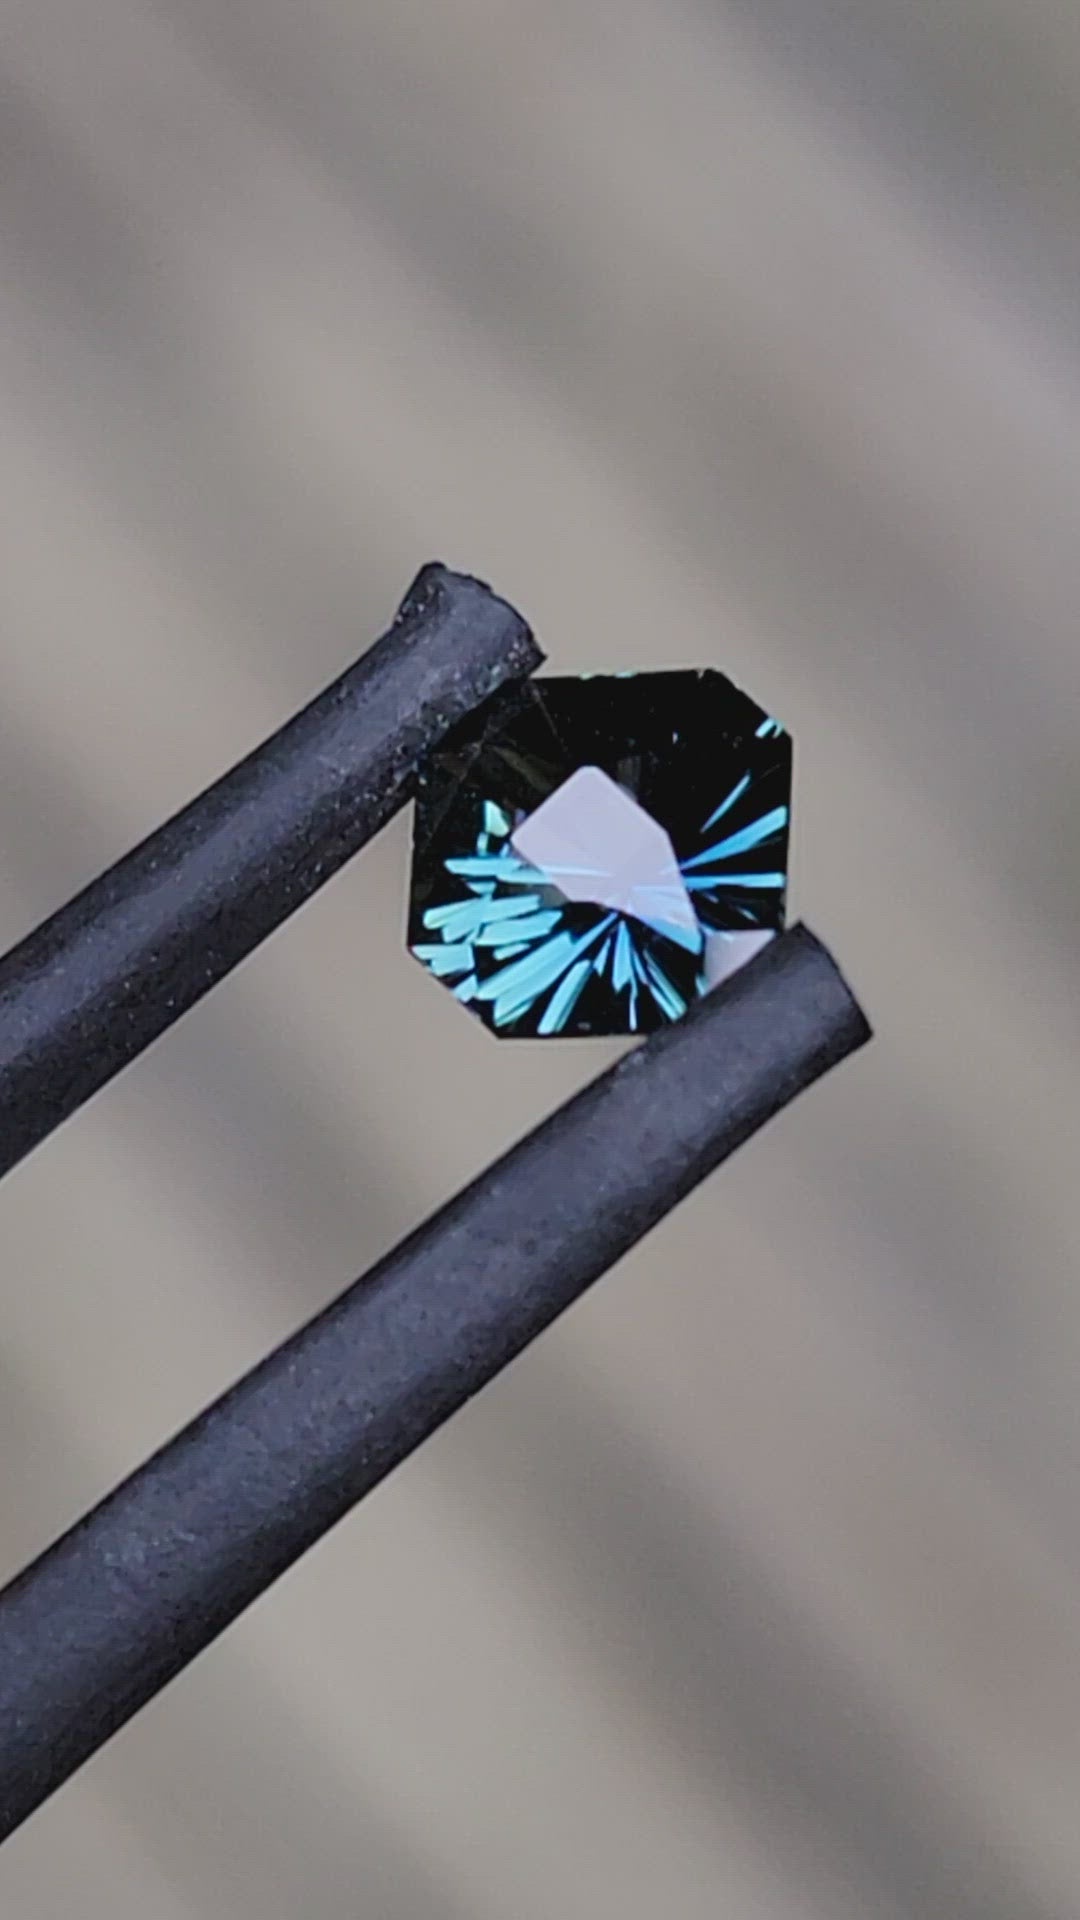 Octogone saphir sarcelle 0,64 carat - Taille fantaisie, 5,3 x 5,7 mm